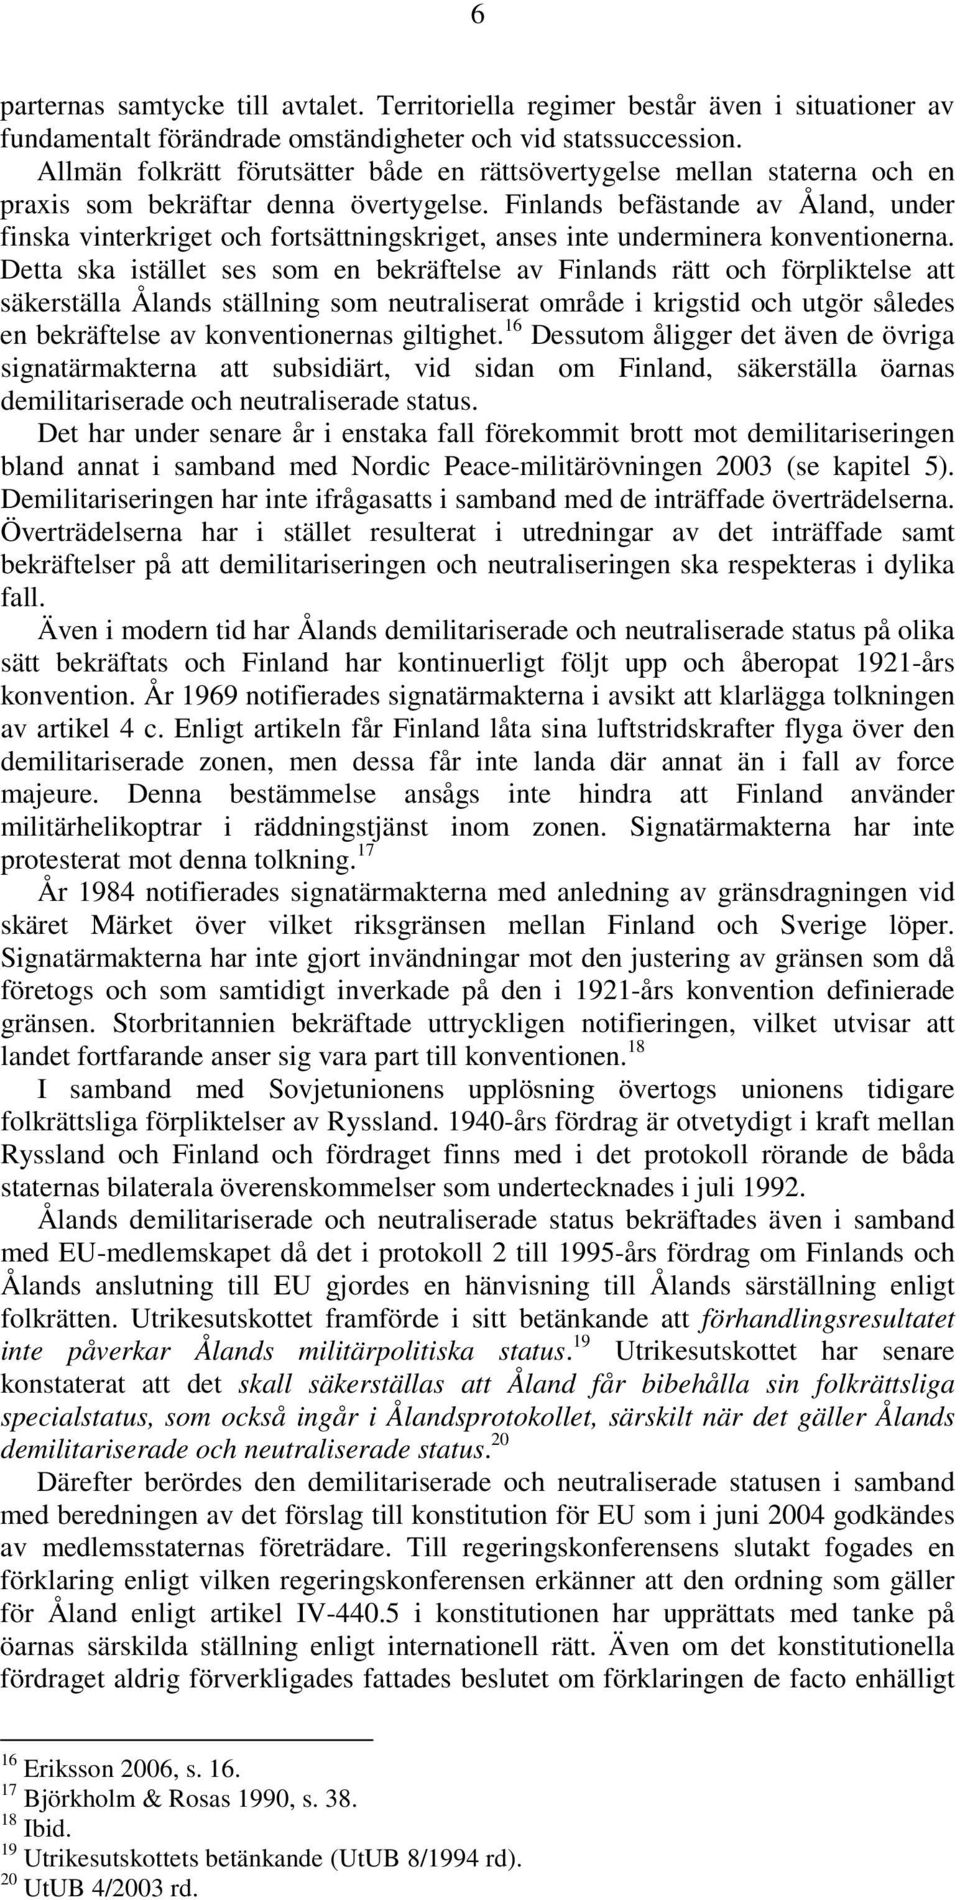 Finlands befästande av Åland, under finska vinterkriget och fortsättningskriget, anses inte underminera konventionerna.